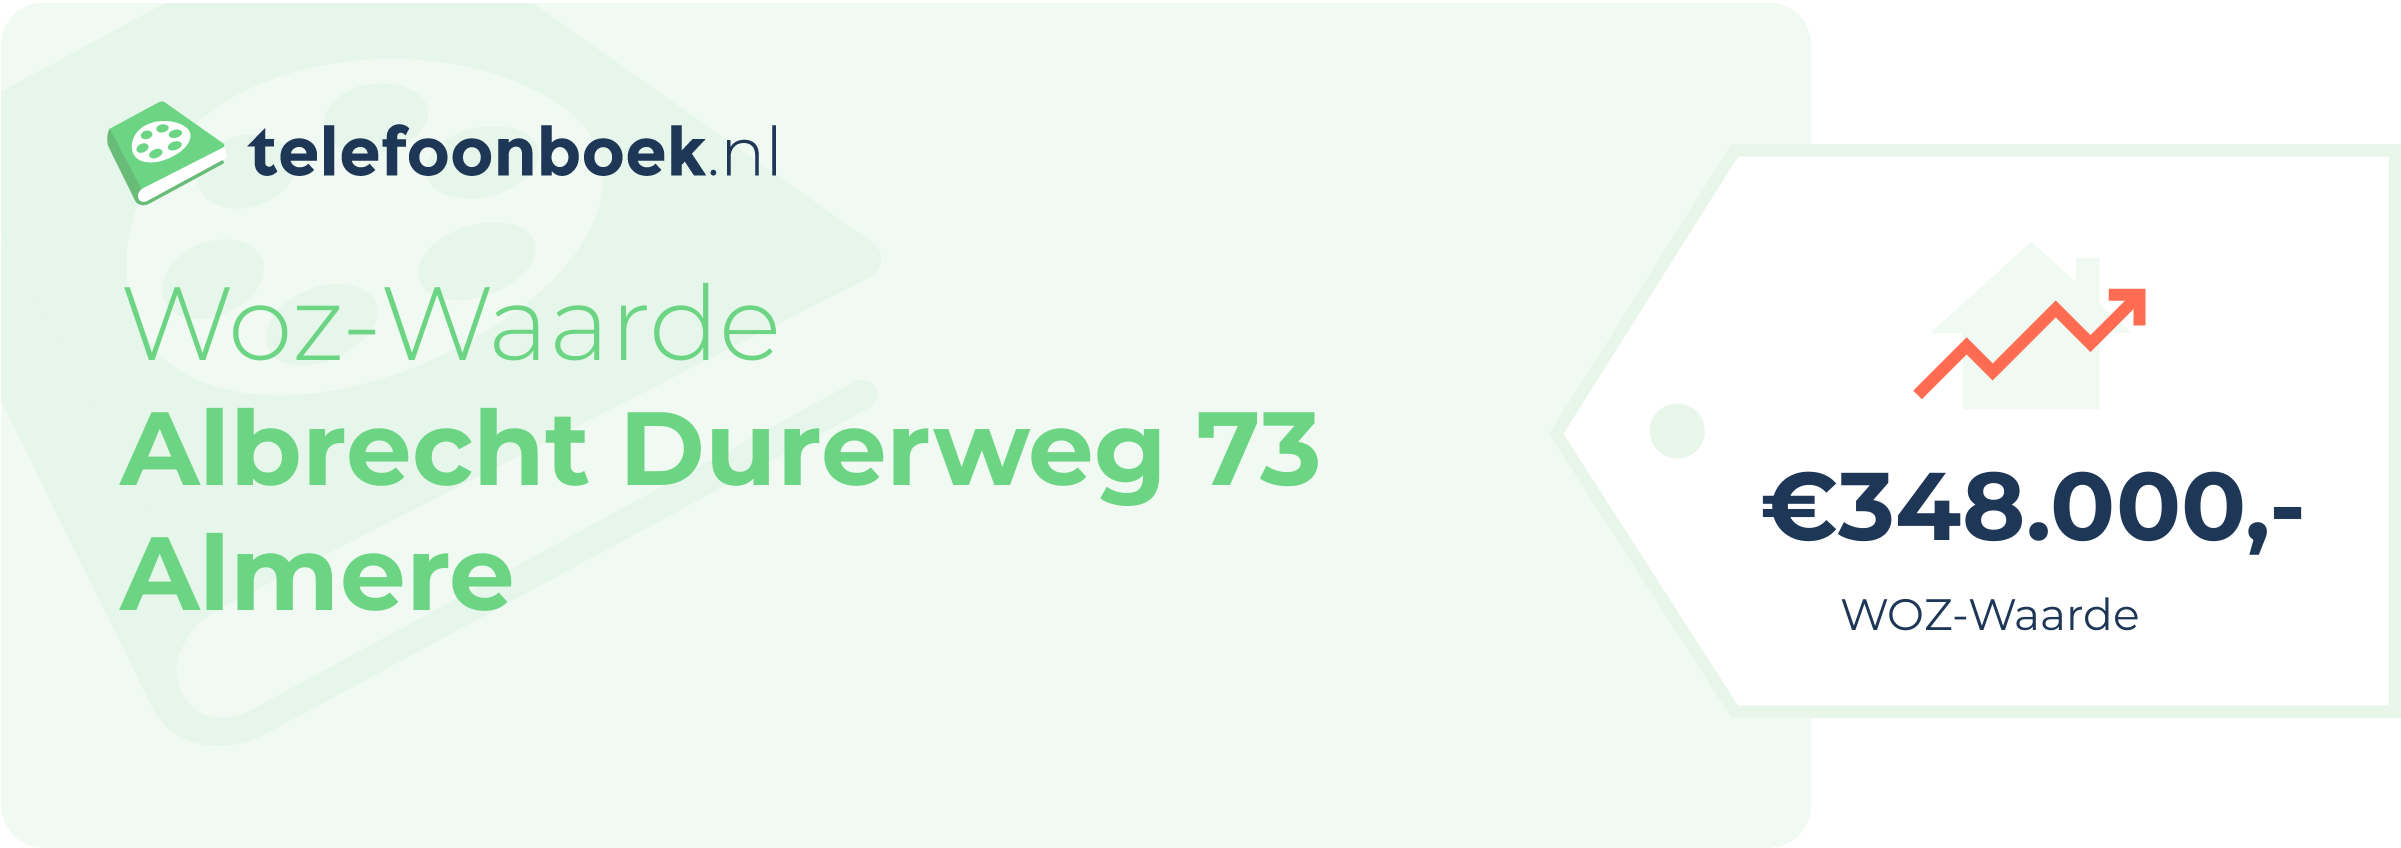 WOZ-waarde Albrecht Durerweg 73 Almere